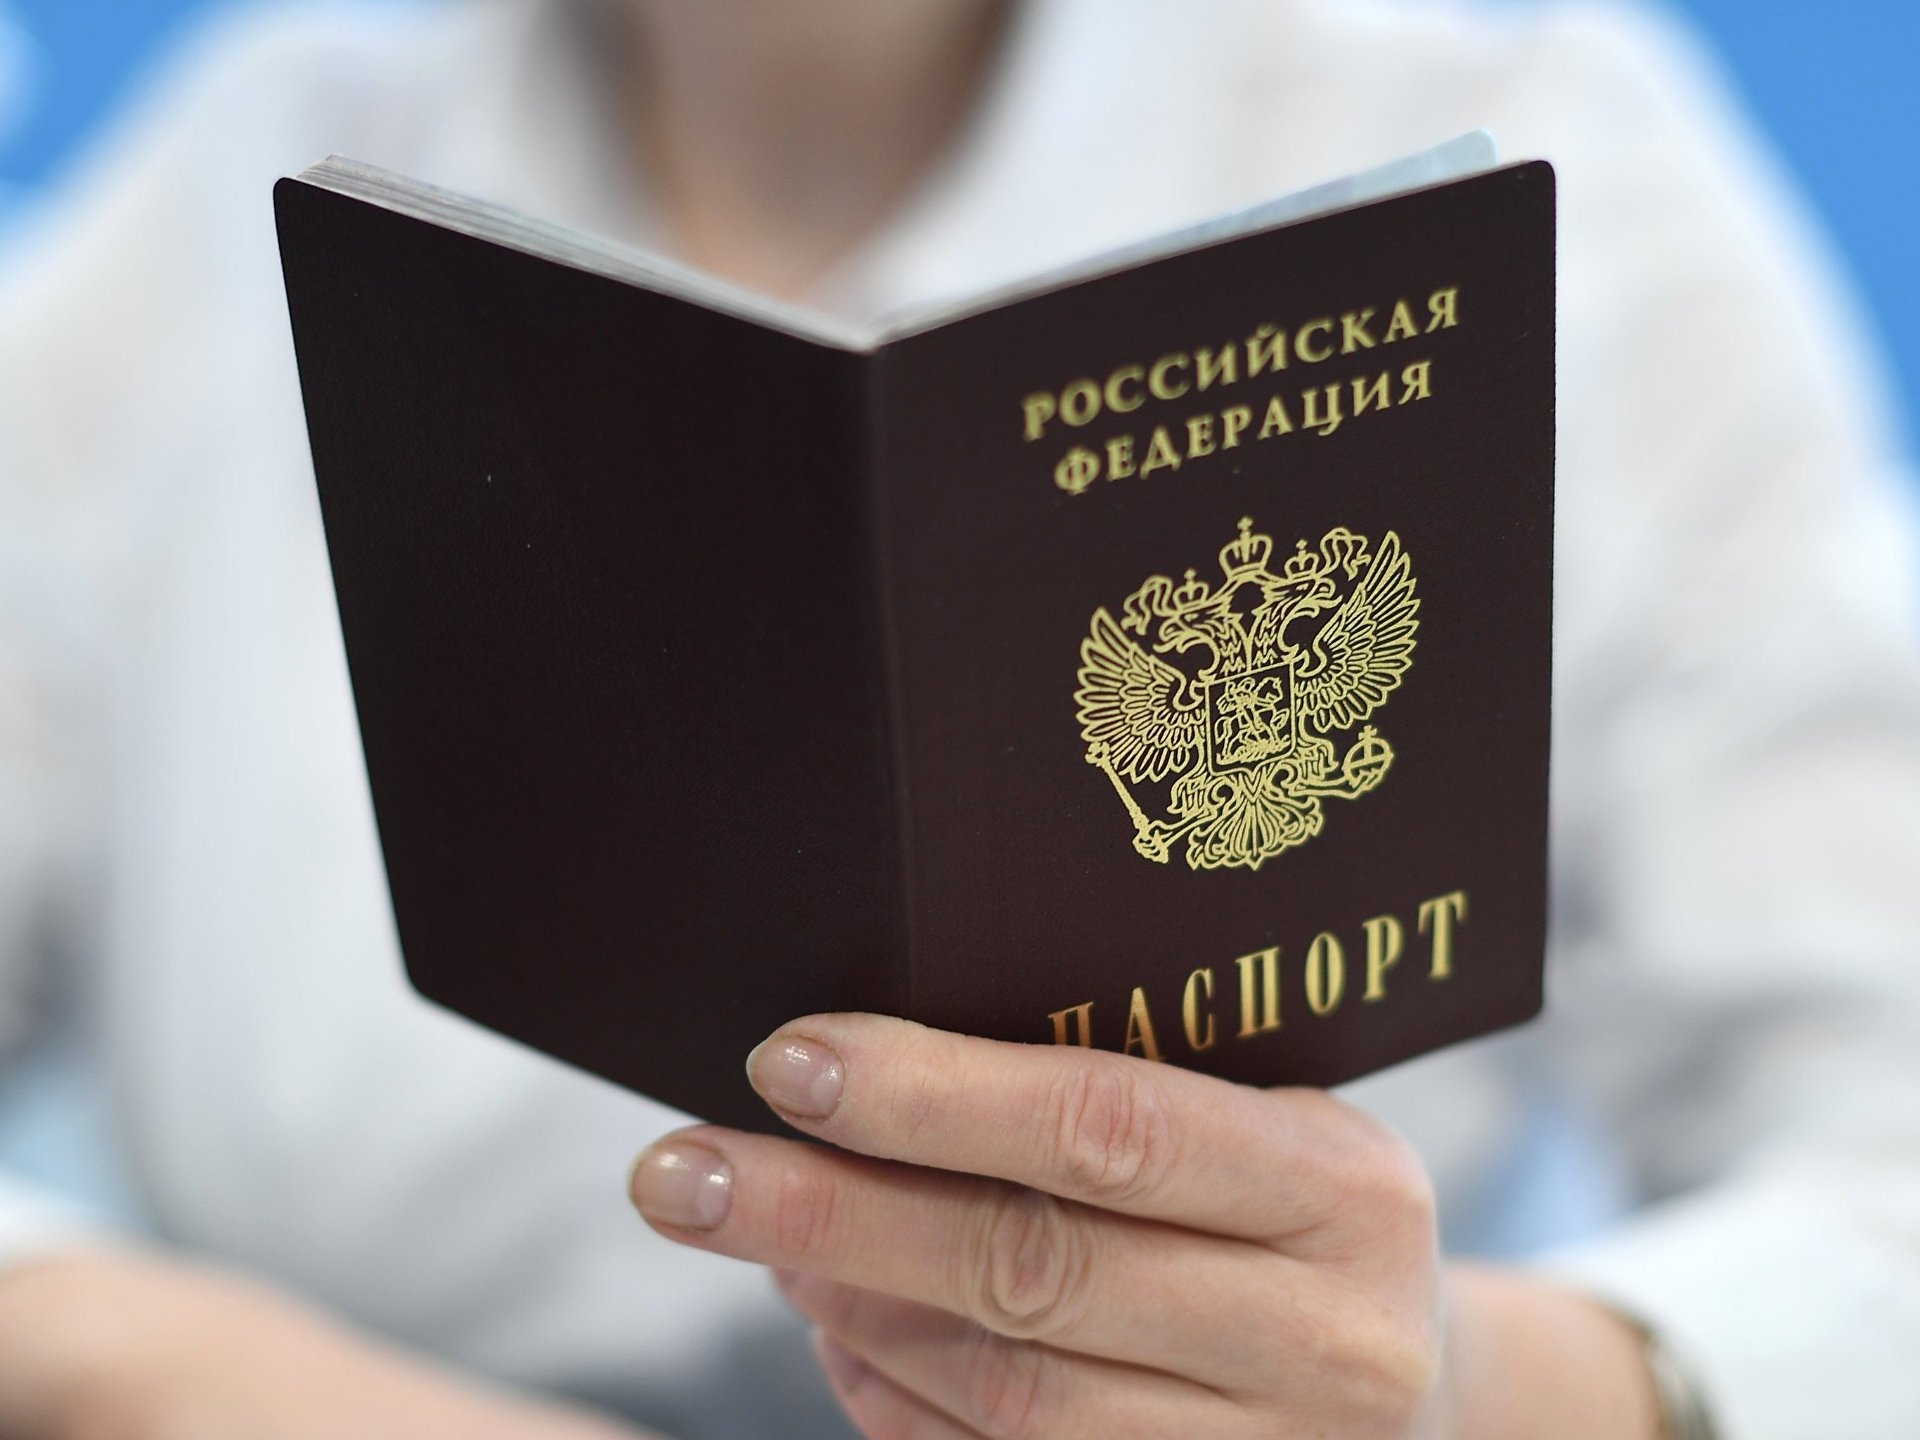 Получить кредит по копии паспорта без владельца можно как ип получить кредит на развитие бизнеса как